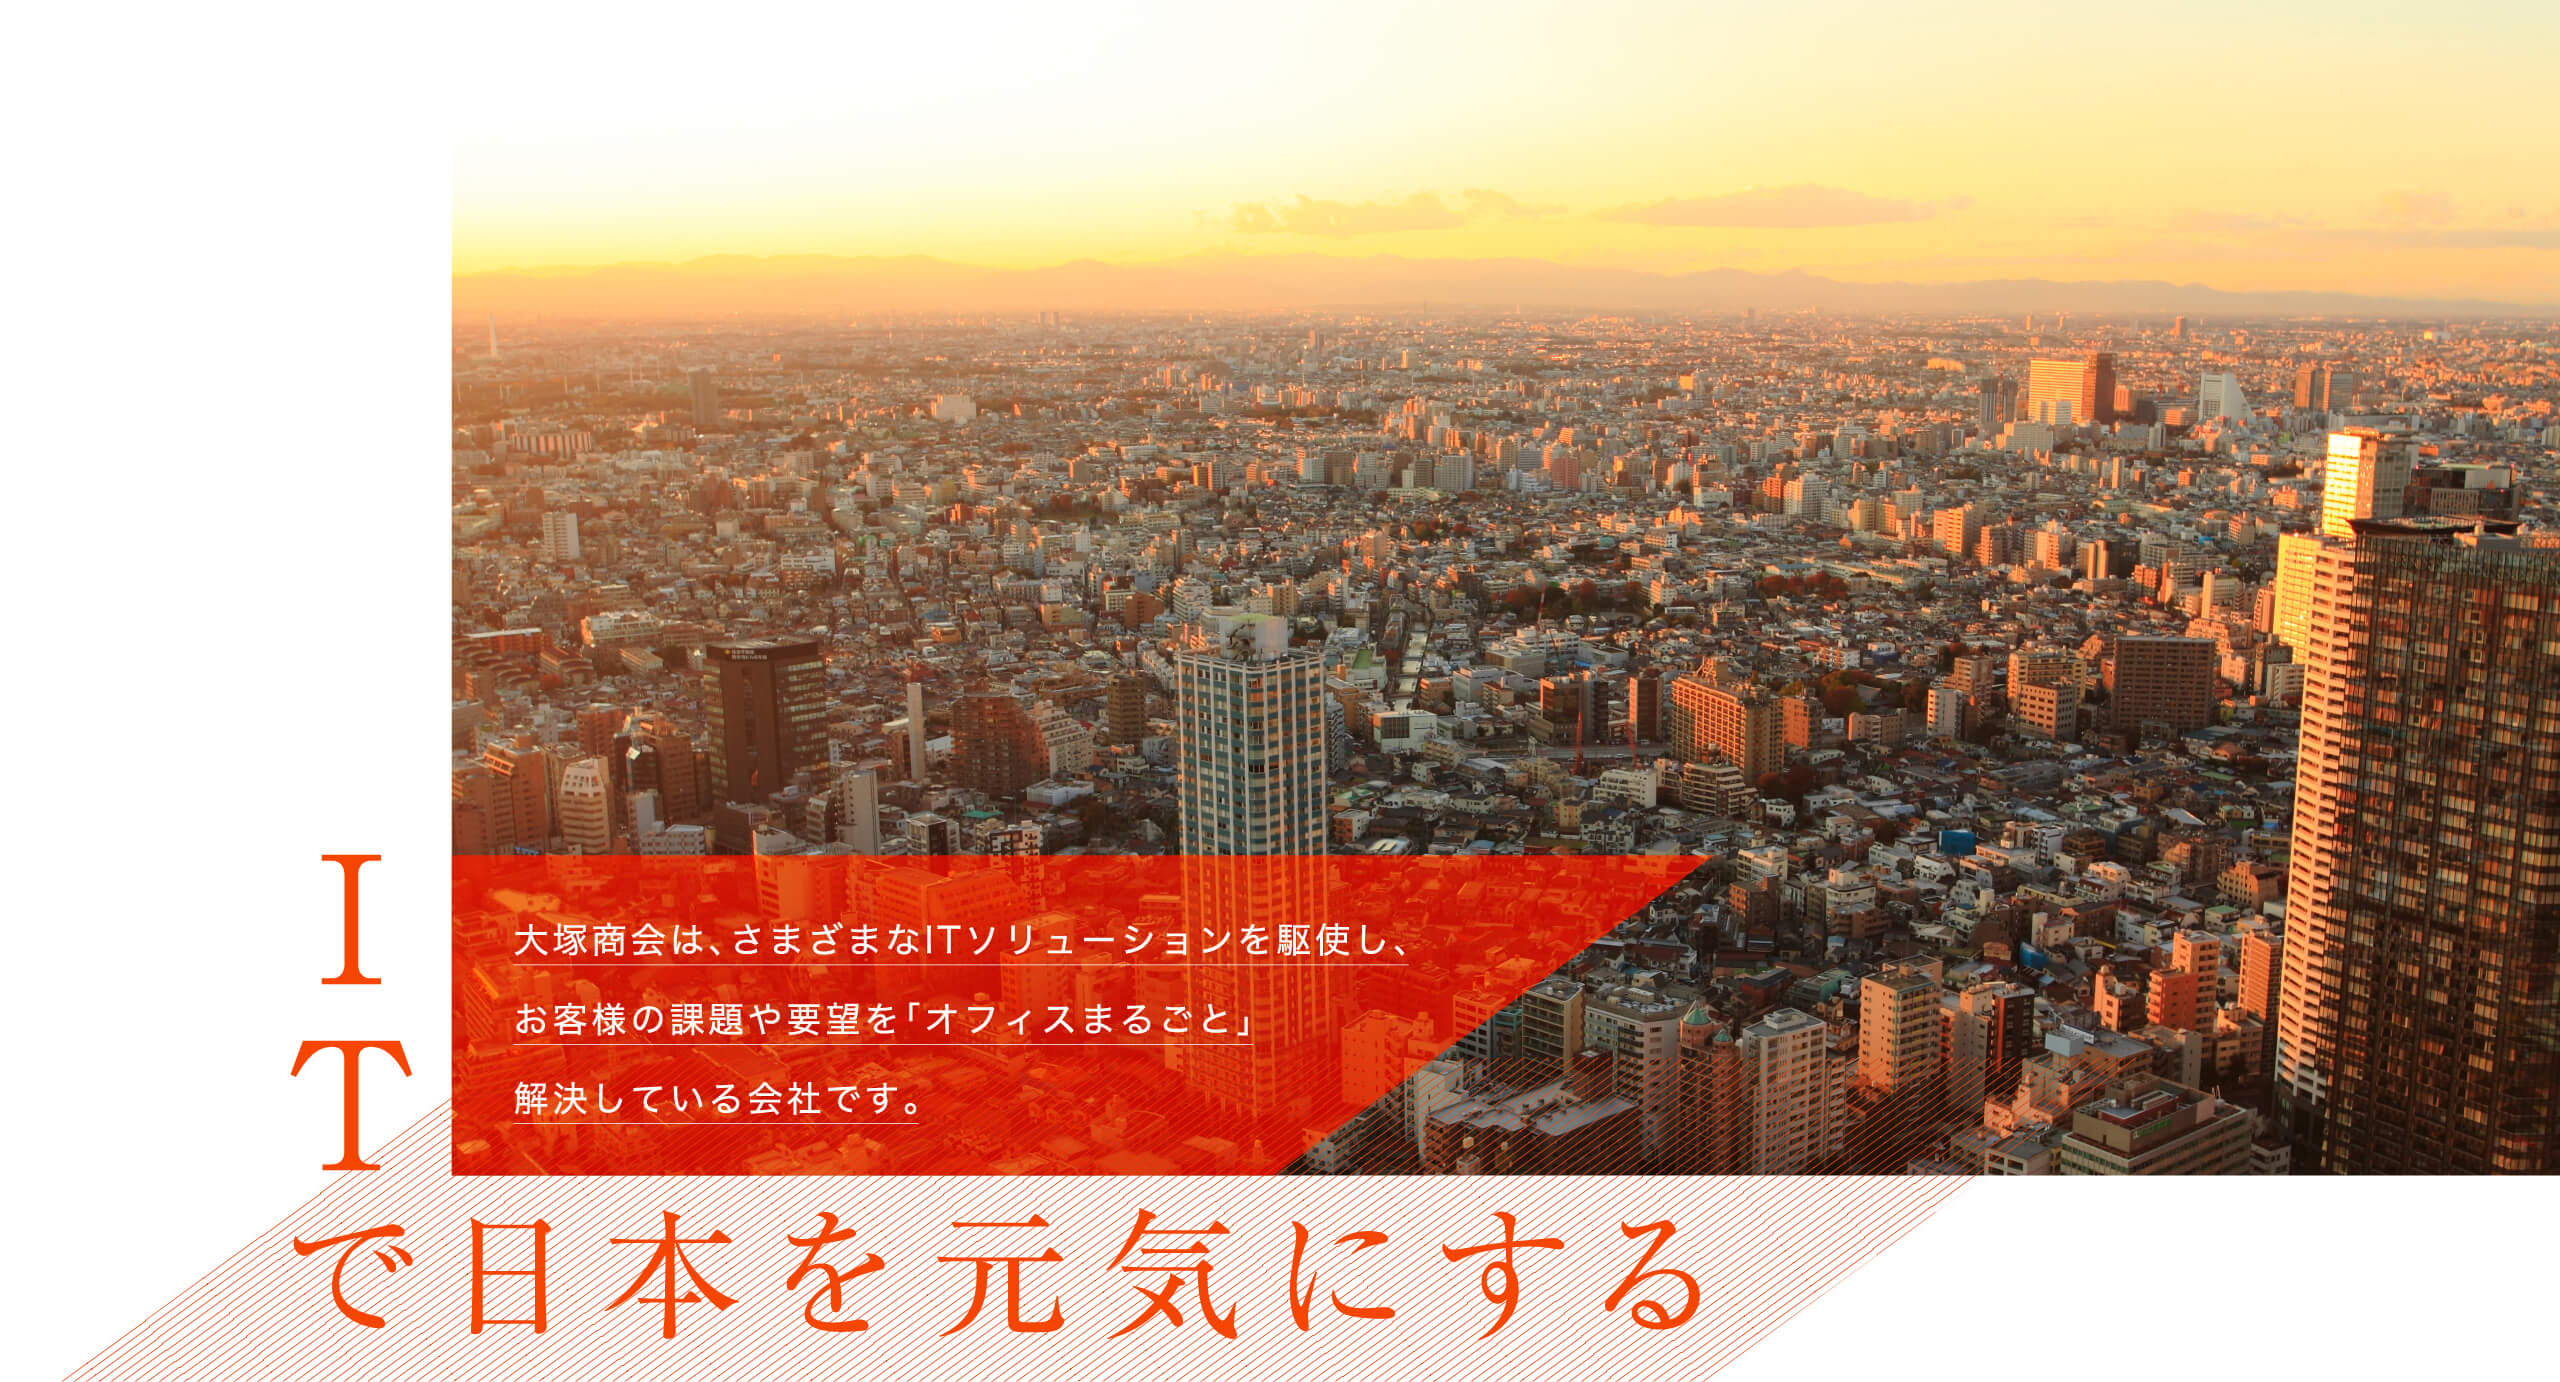 ITで日本を元気にする大塚商会は、さまざまなITソリューションを駆使し、お客様の課題や要望を「オフィスまるごと」解決している会社です。